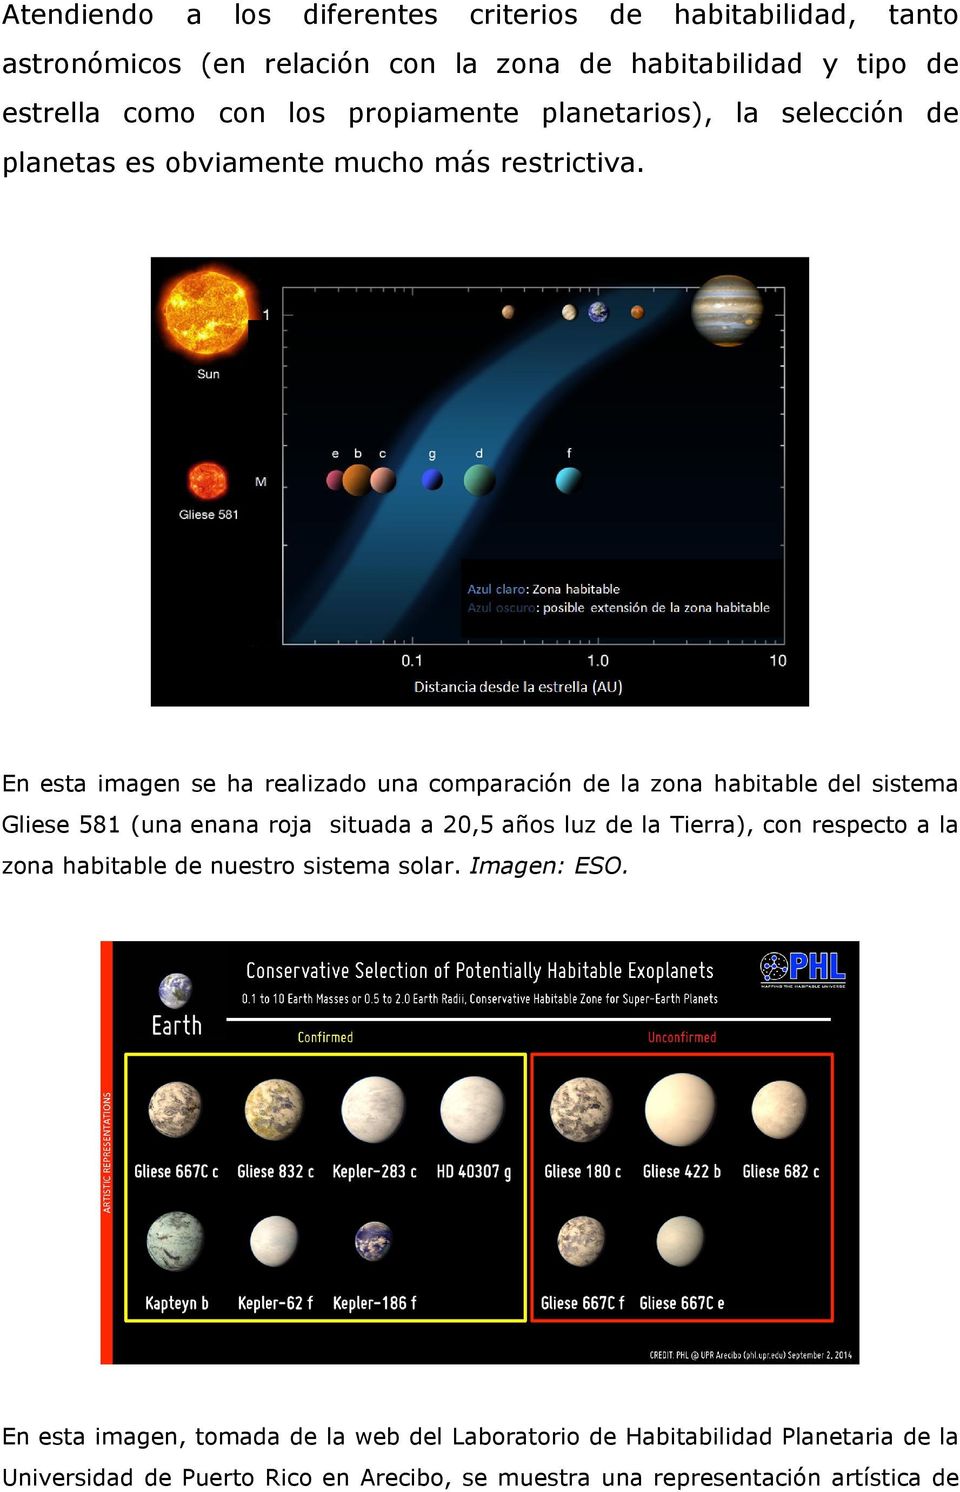 En esta imagen se ha realizado una comparación de la zona habitable del sistema Gliese 581 (una enana roja situada a 20,5 años luz de la Tierra), con